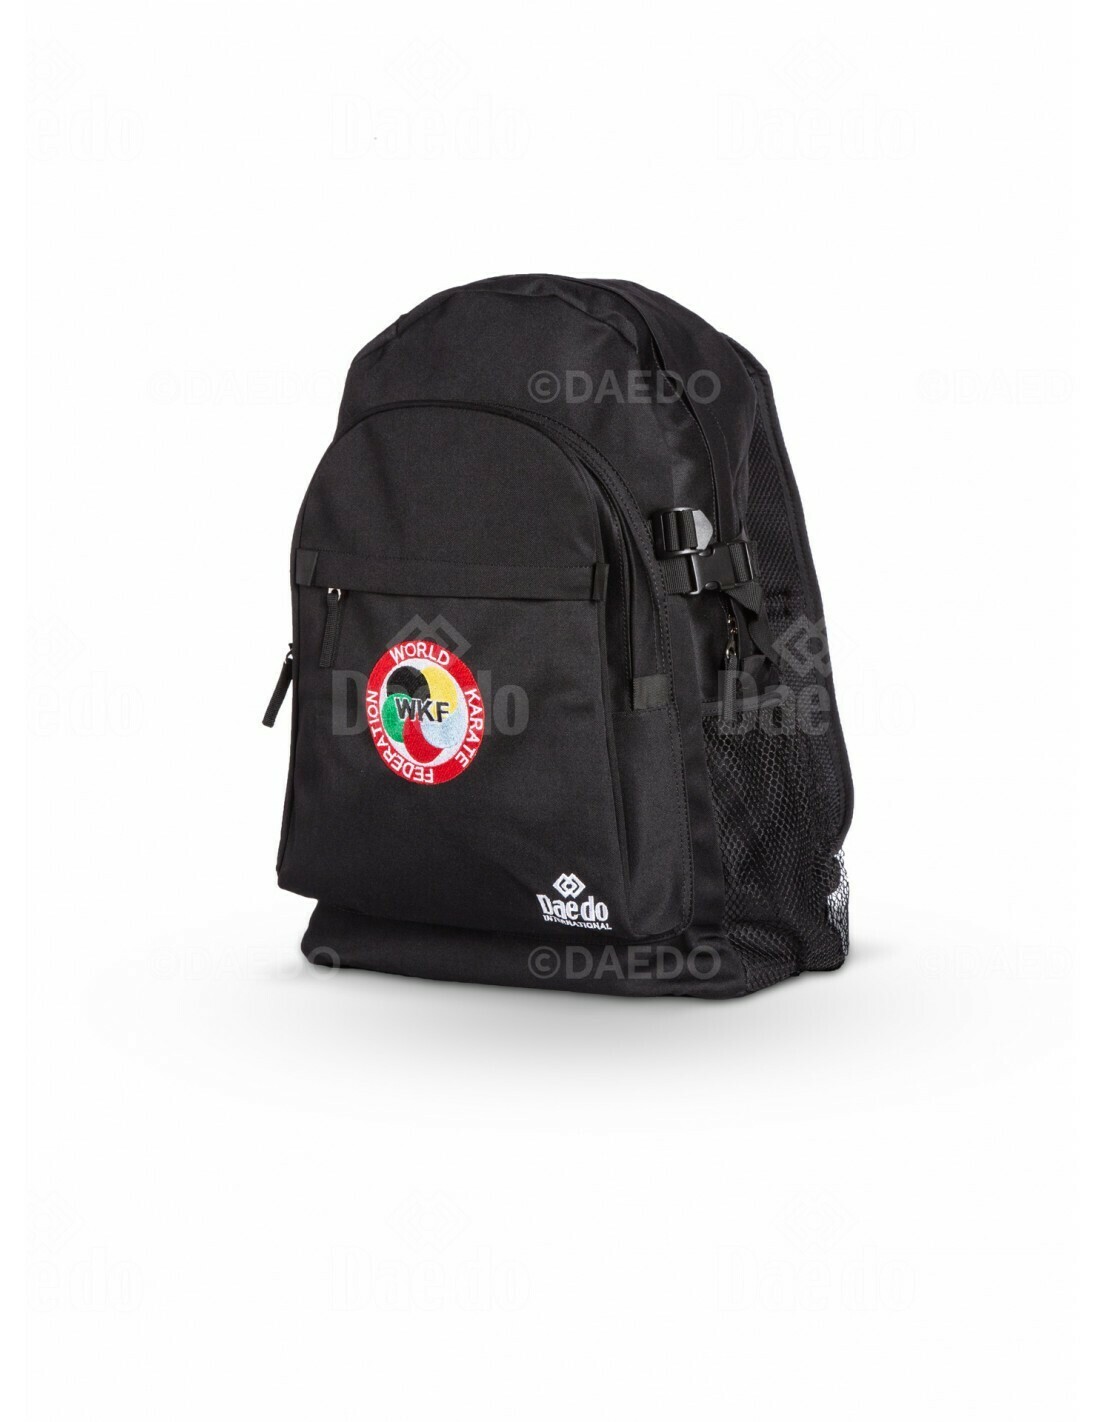 Daedo Backpack